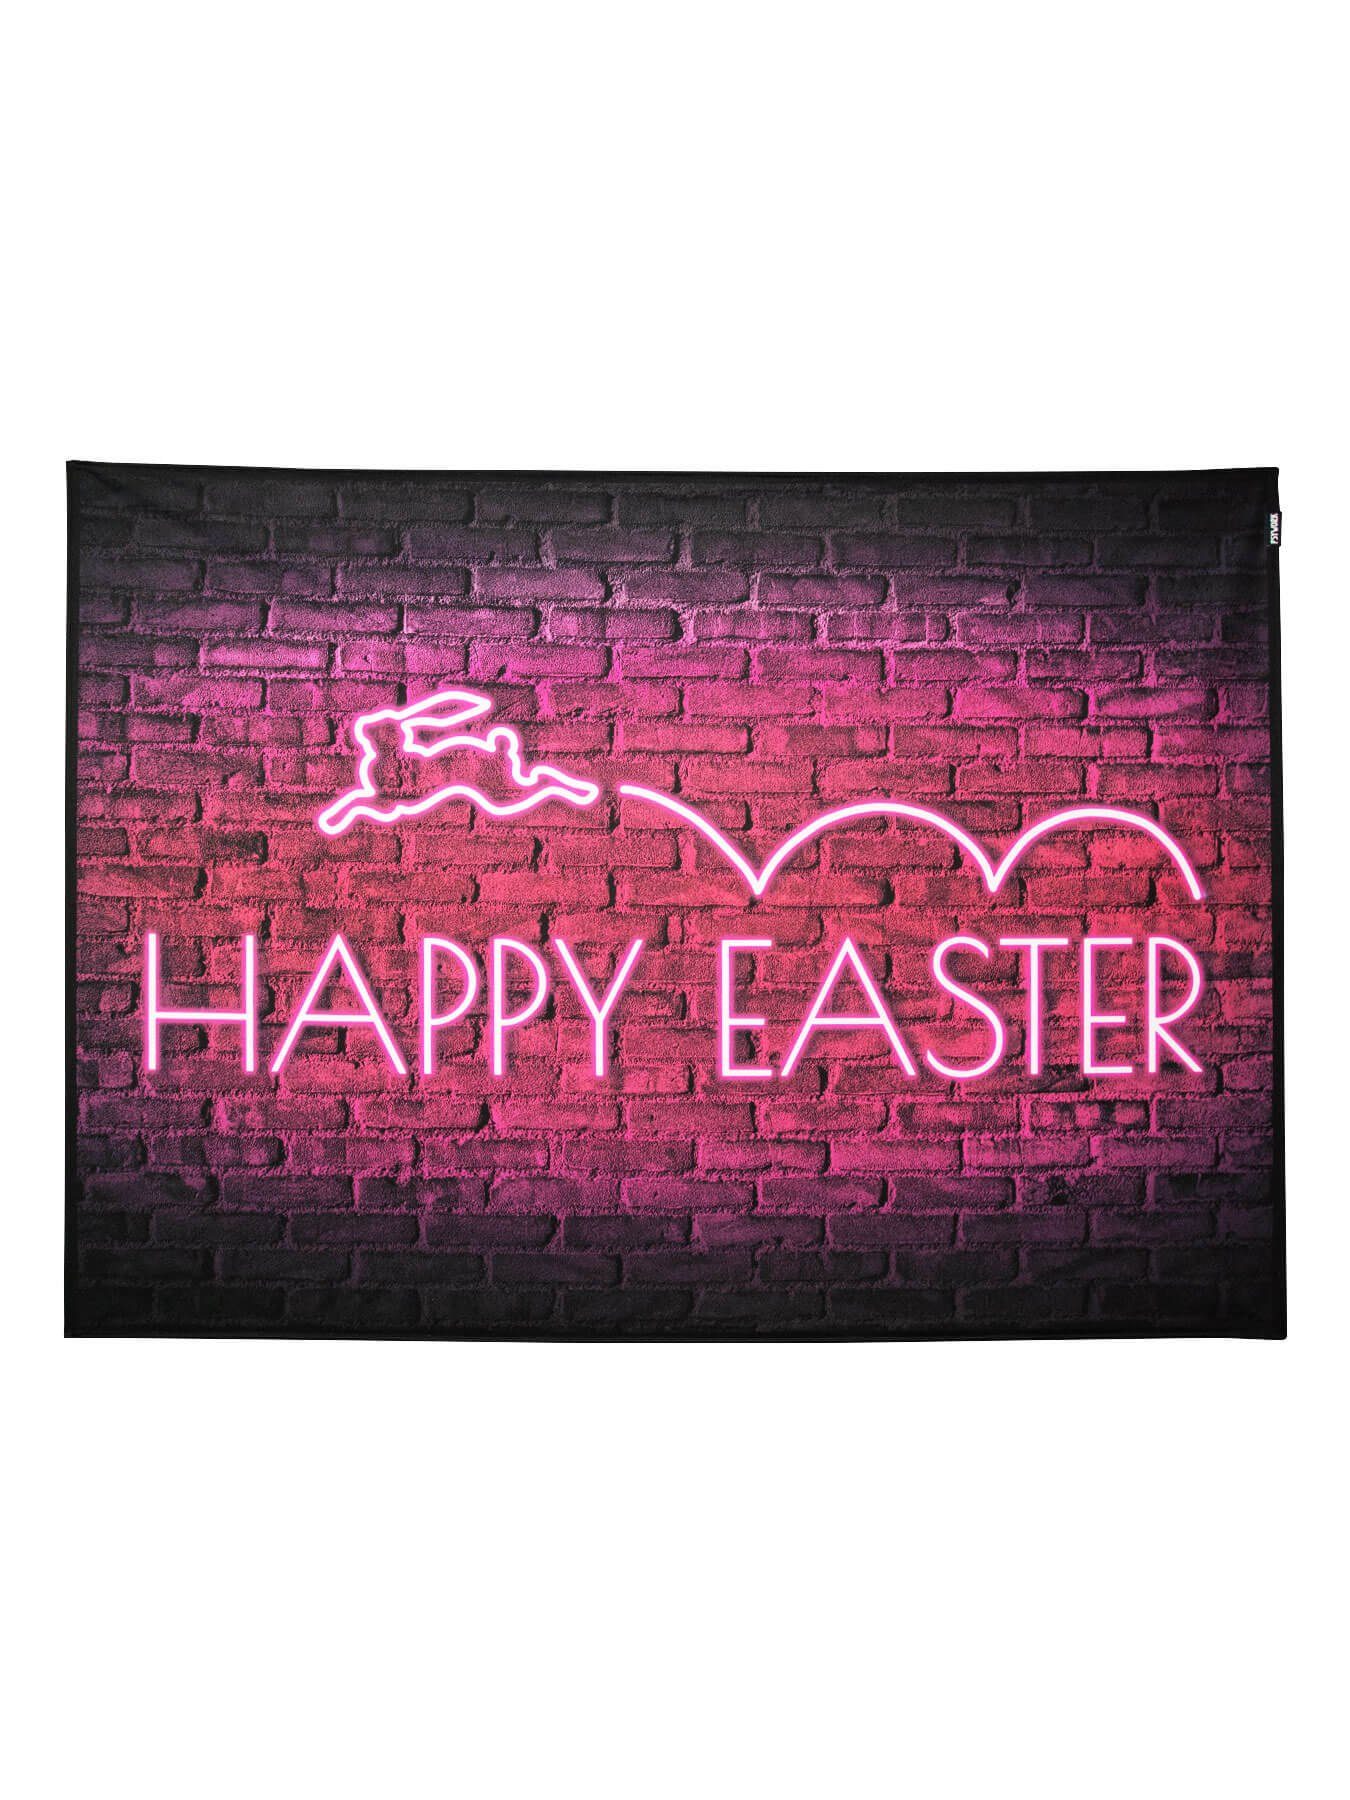 PSYWORK Poster PSYWORK Schwarzlicht Stoffposter Neon "Happy Easter", 1,0x1,4m, UV-aktiv, leuchtet unter Schwarzlicht